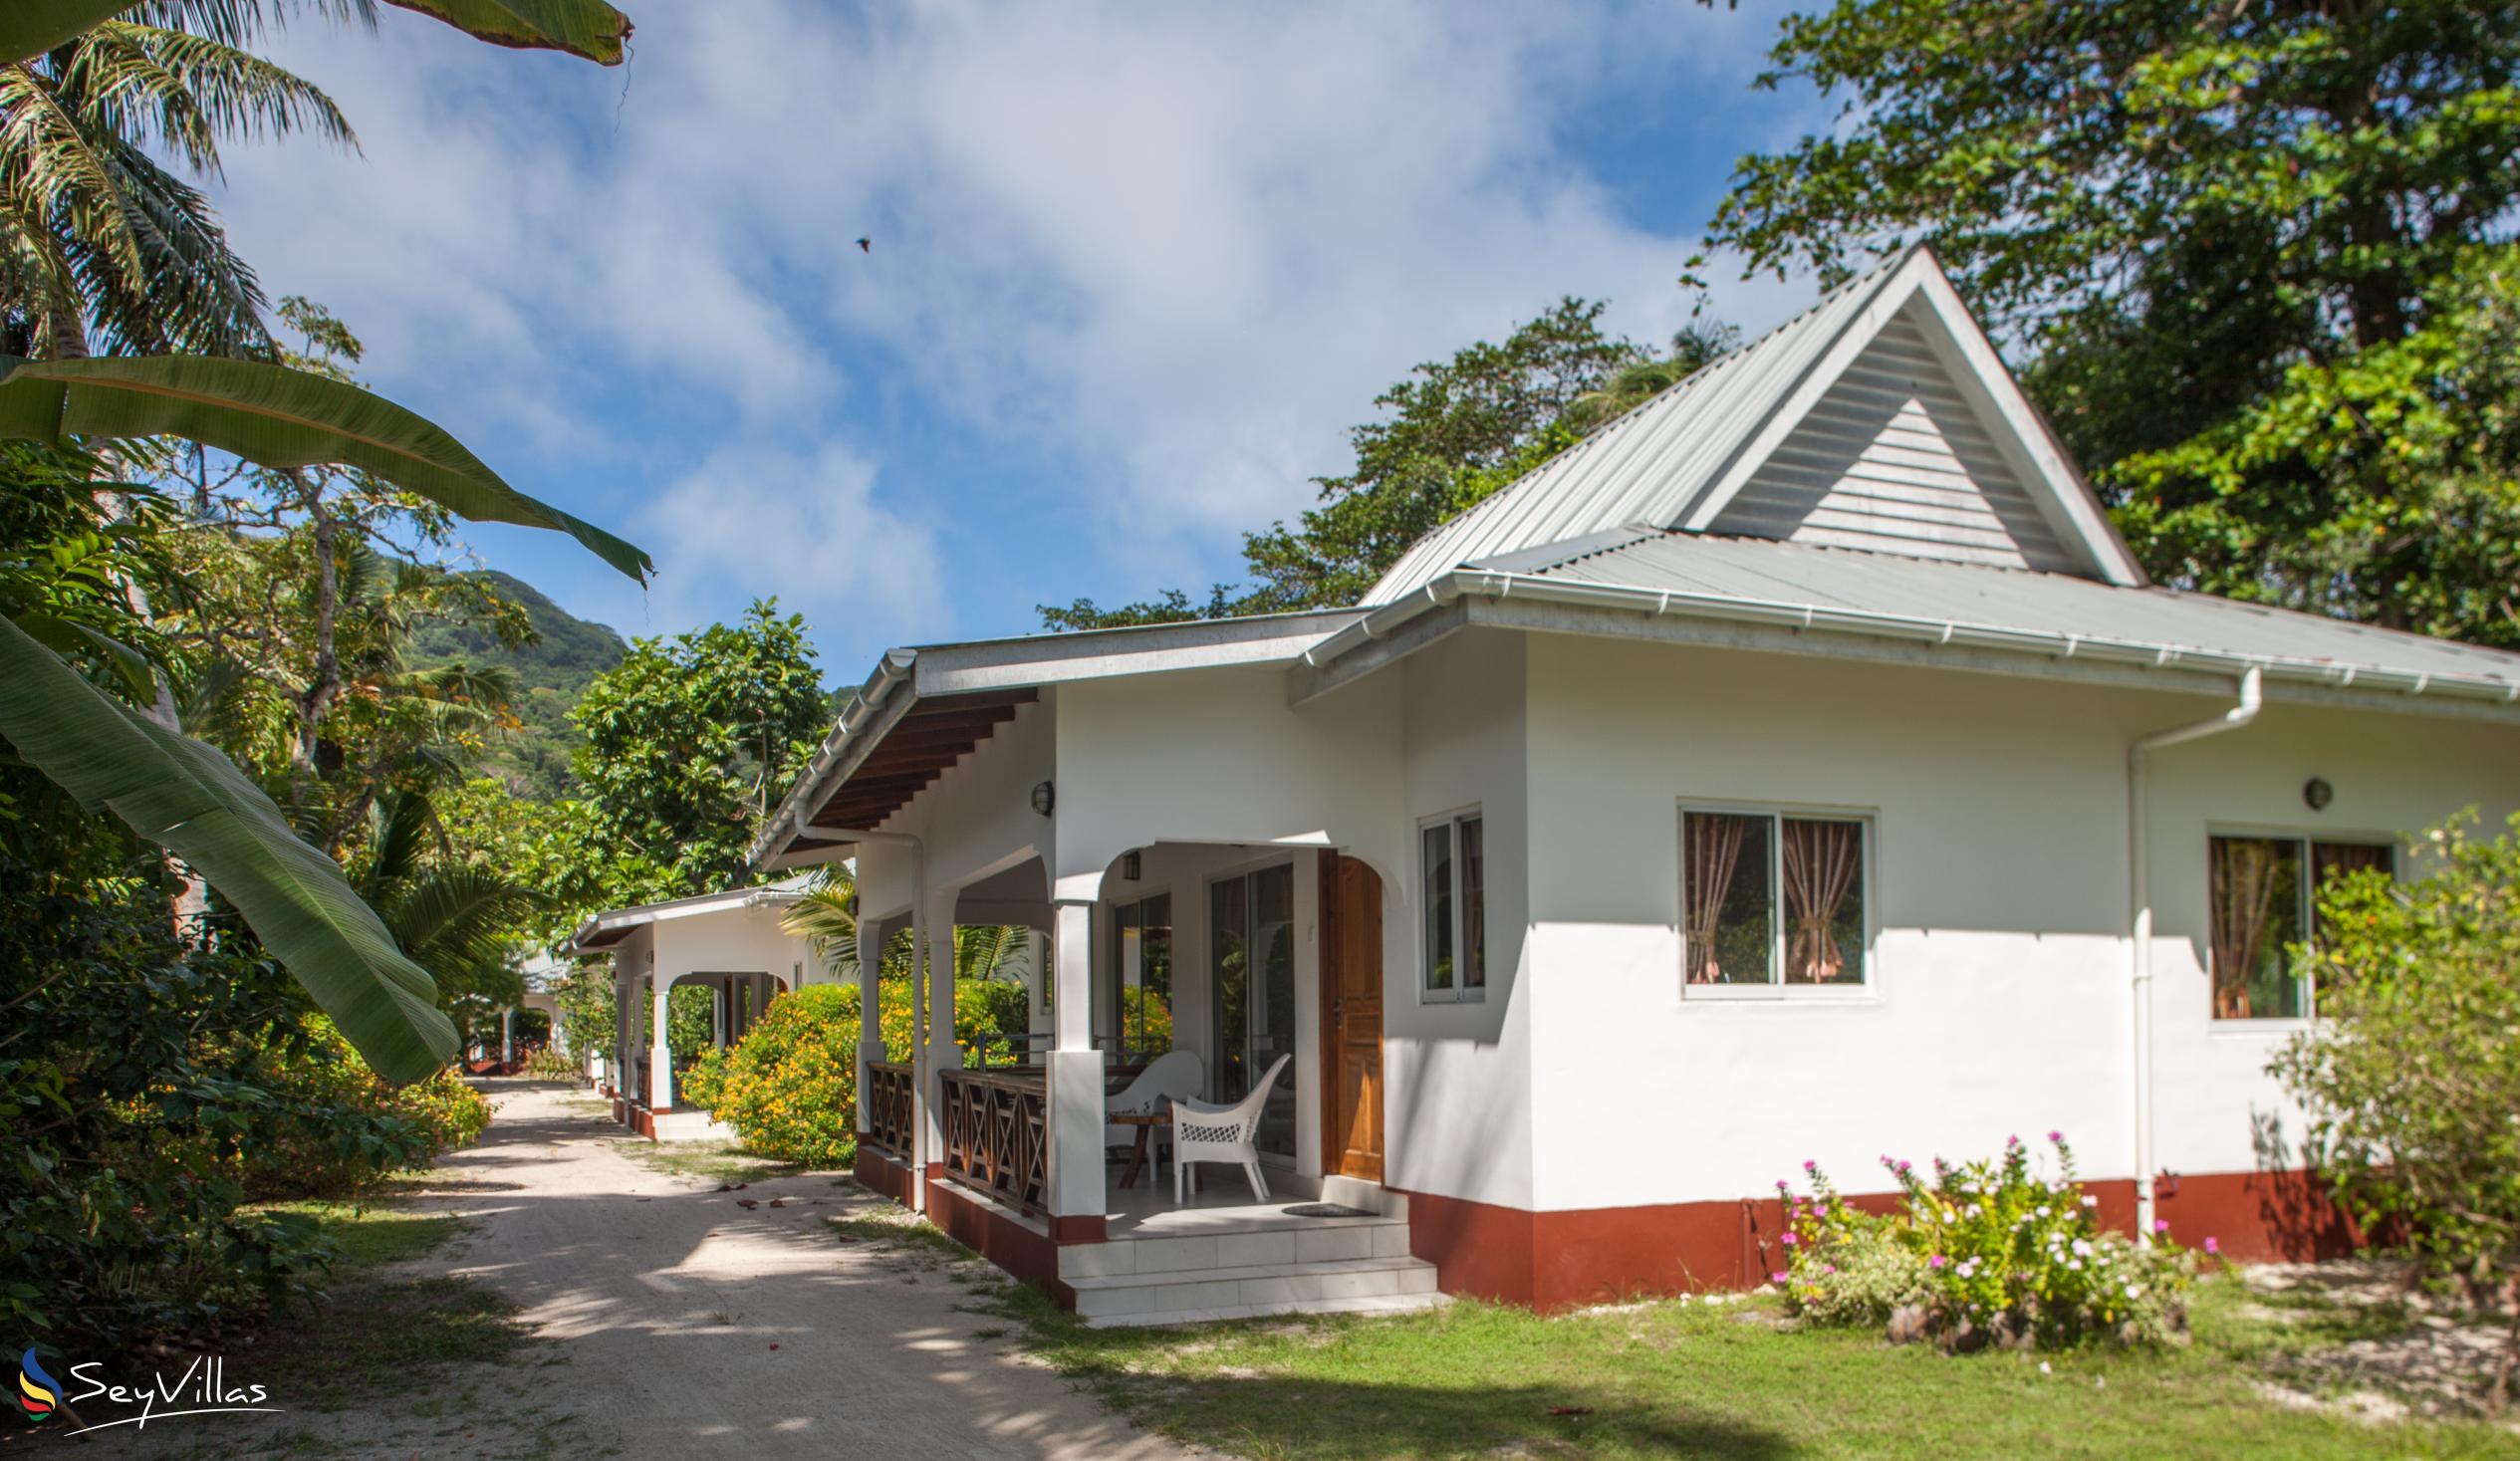 Foto 6: Villa Veuve - Aussenbereich - La Digue (Seychellen)